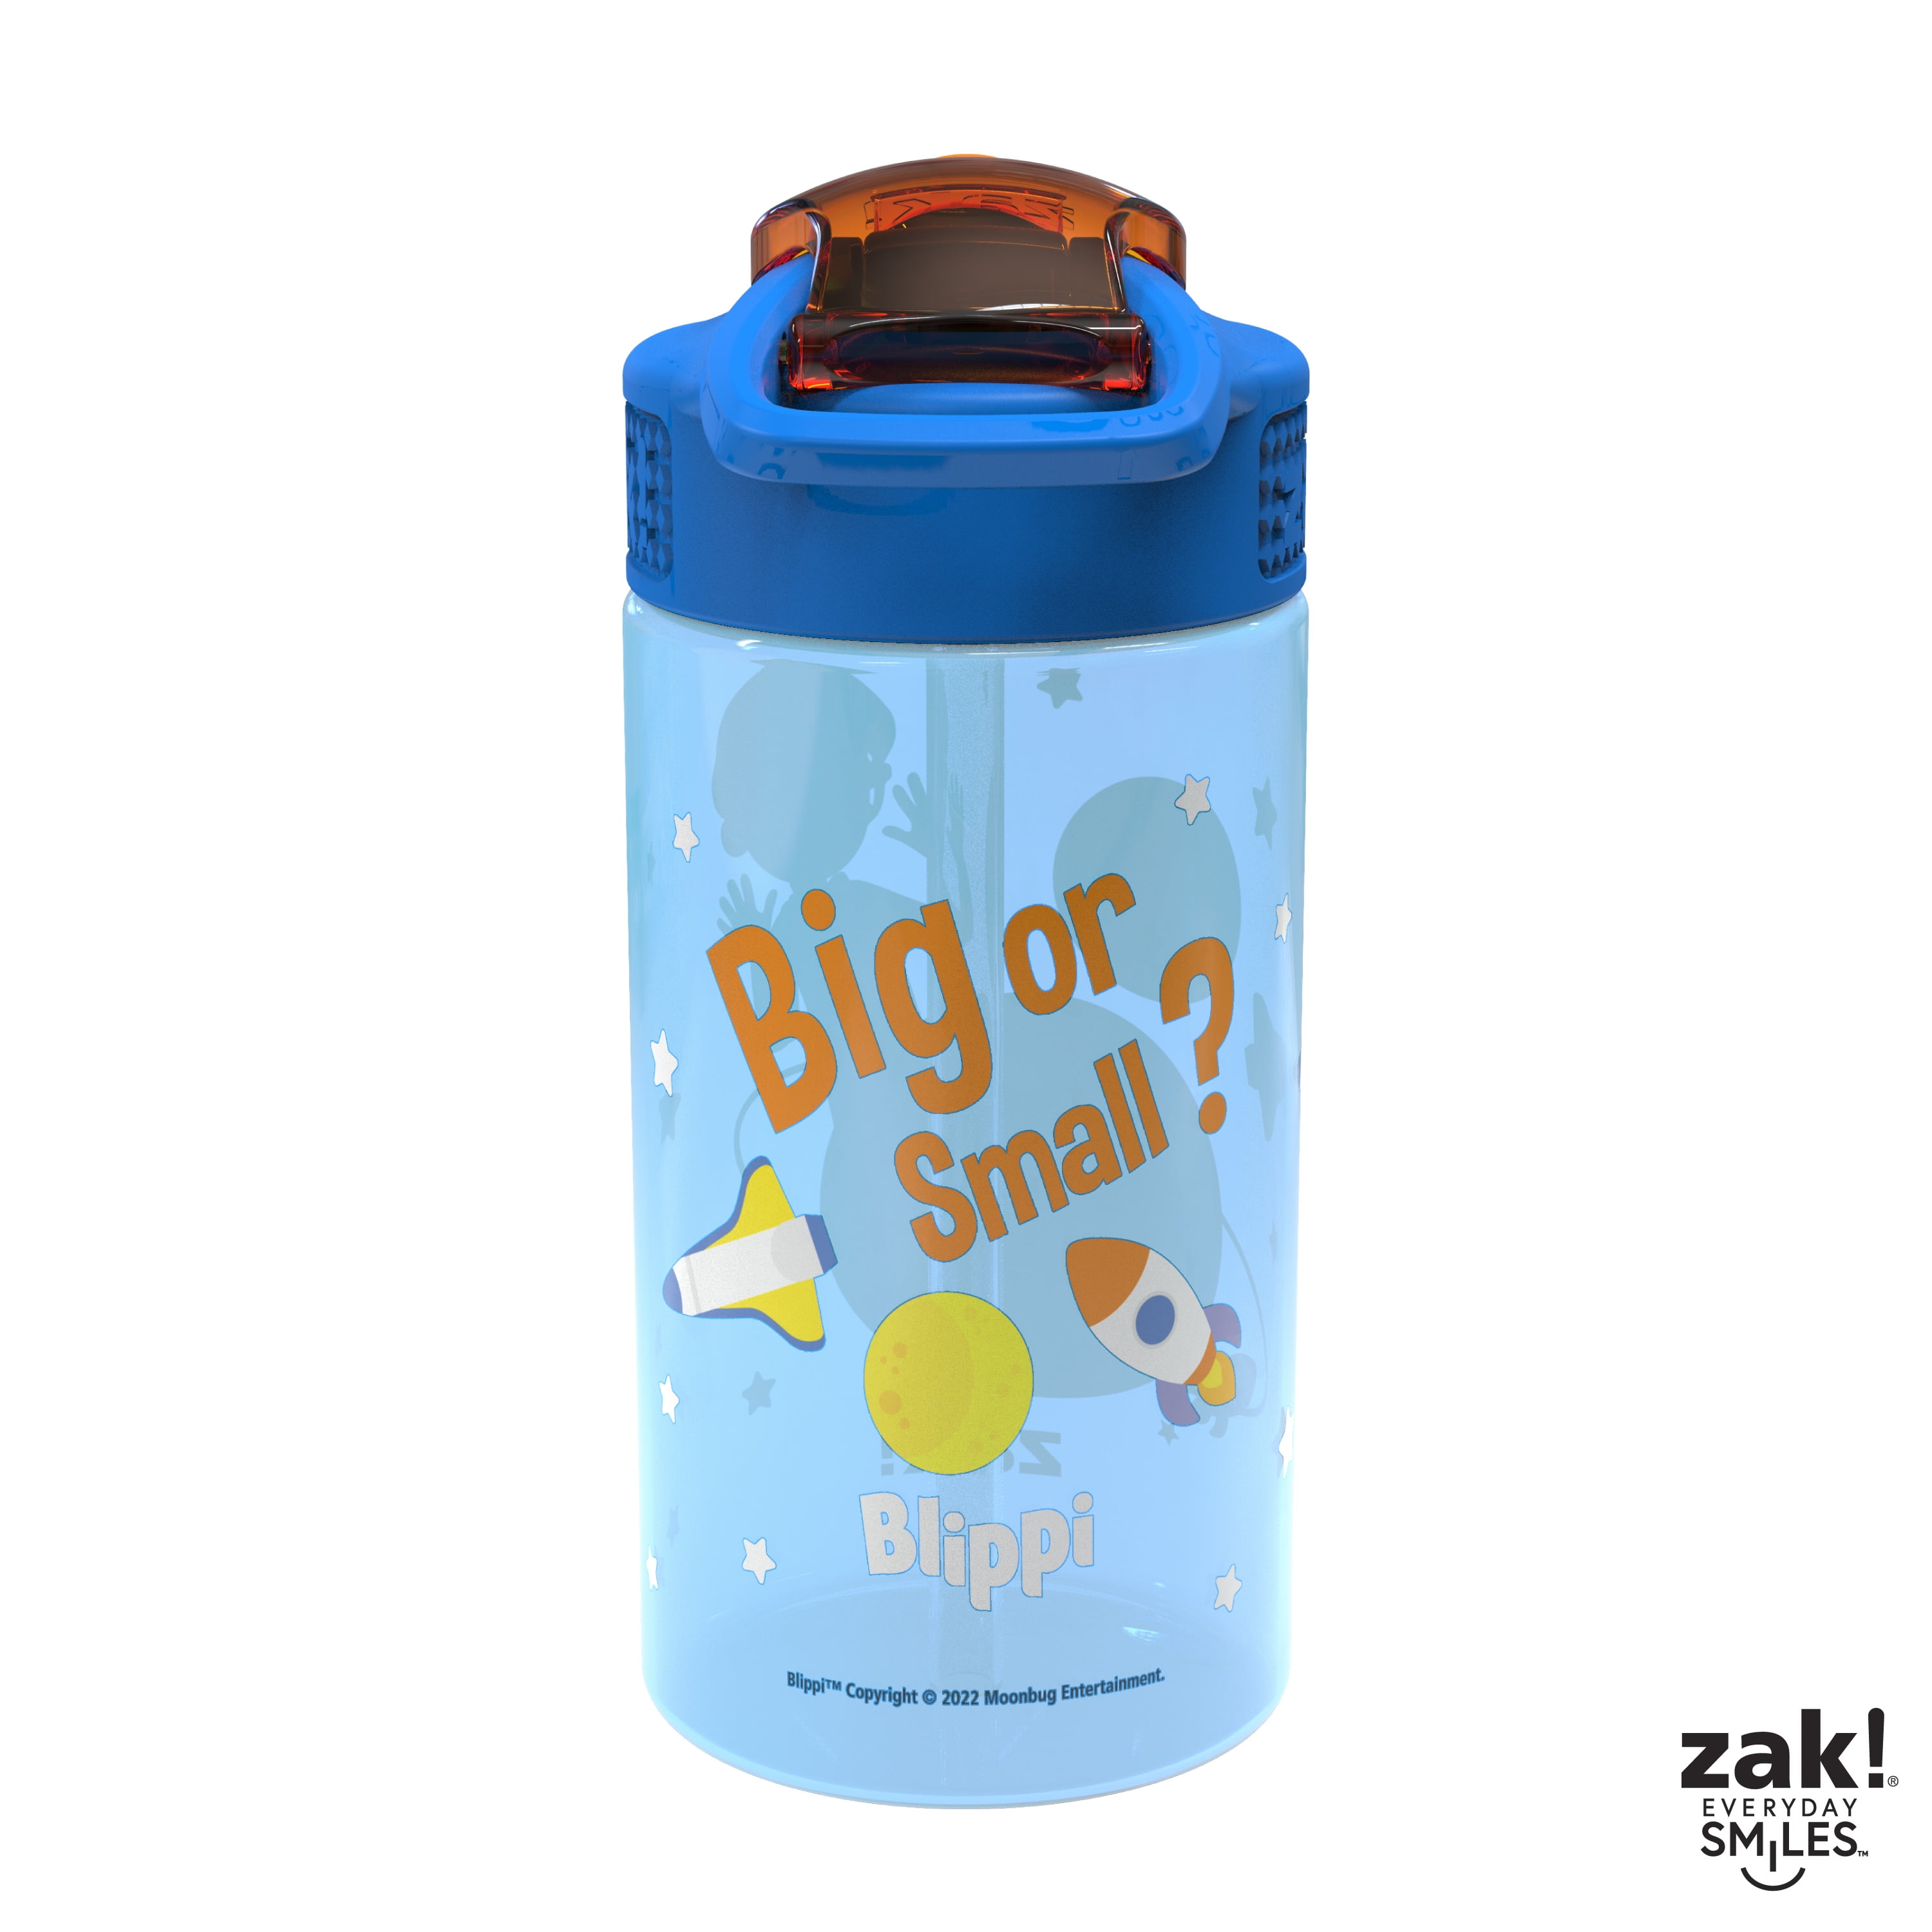 2-Pack 16oz Zak Designs Kids' Water Bottles: Bluey, Paw Patrol, Blippi